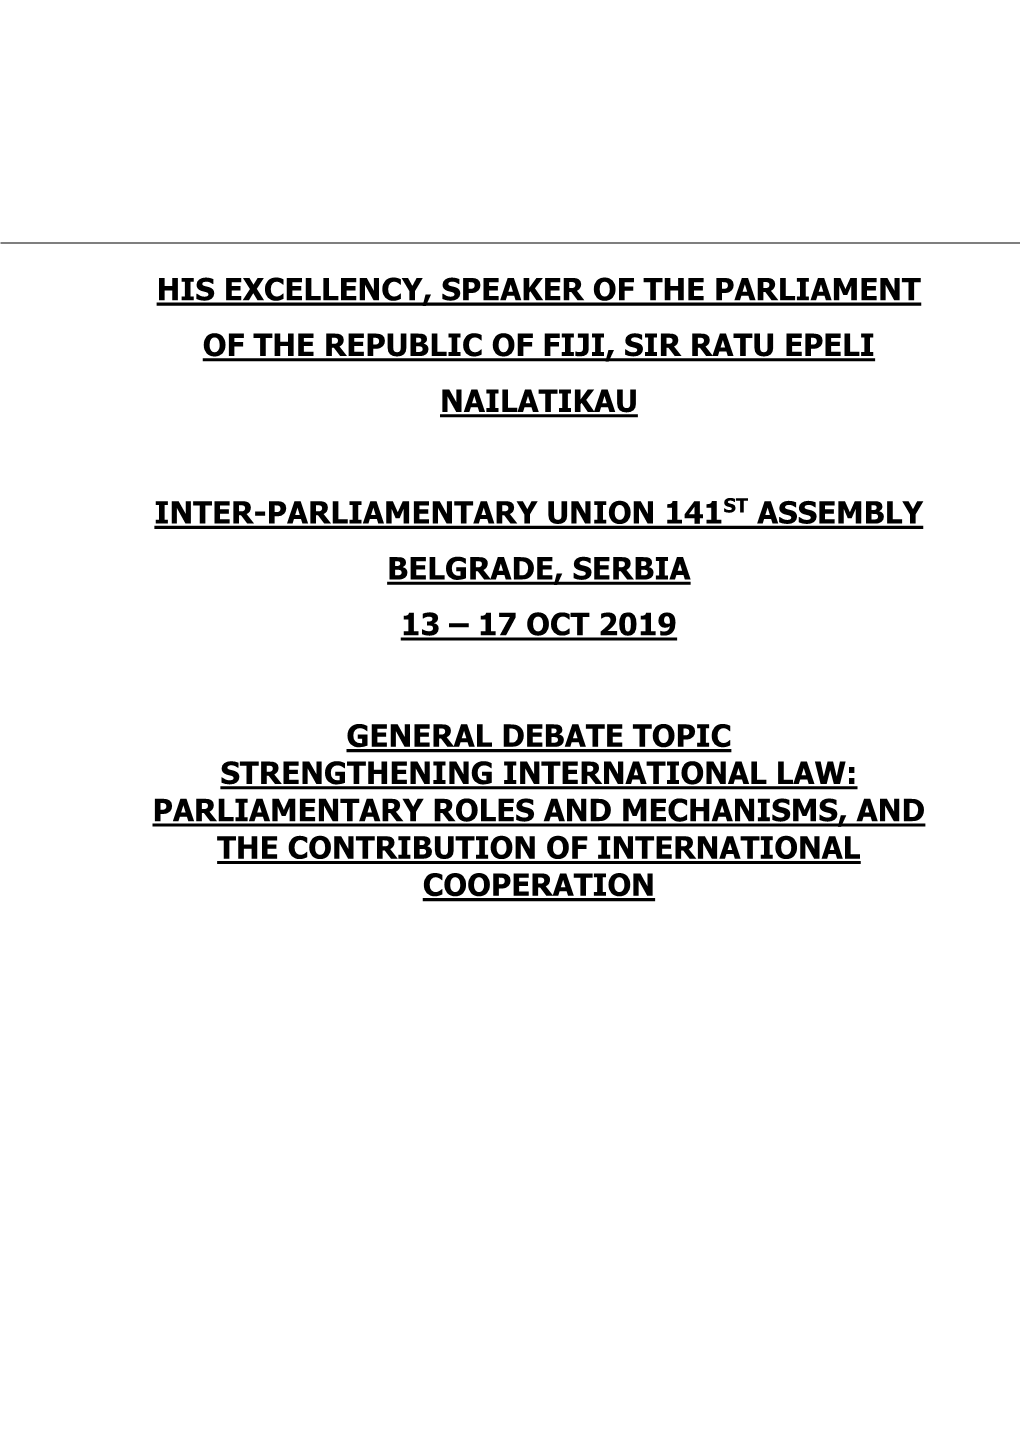 Download Fiji-General Debate.Pdf